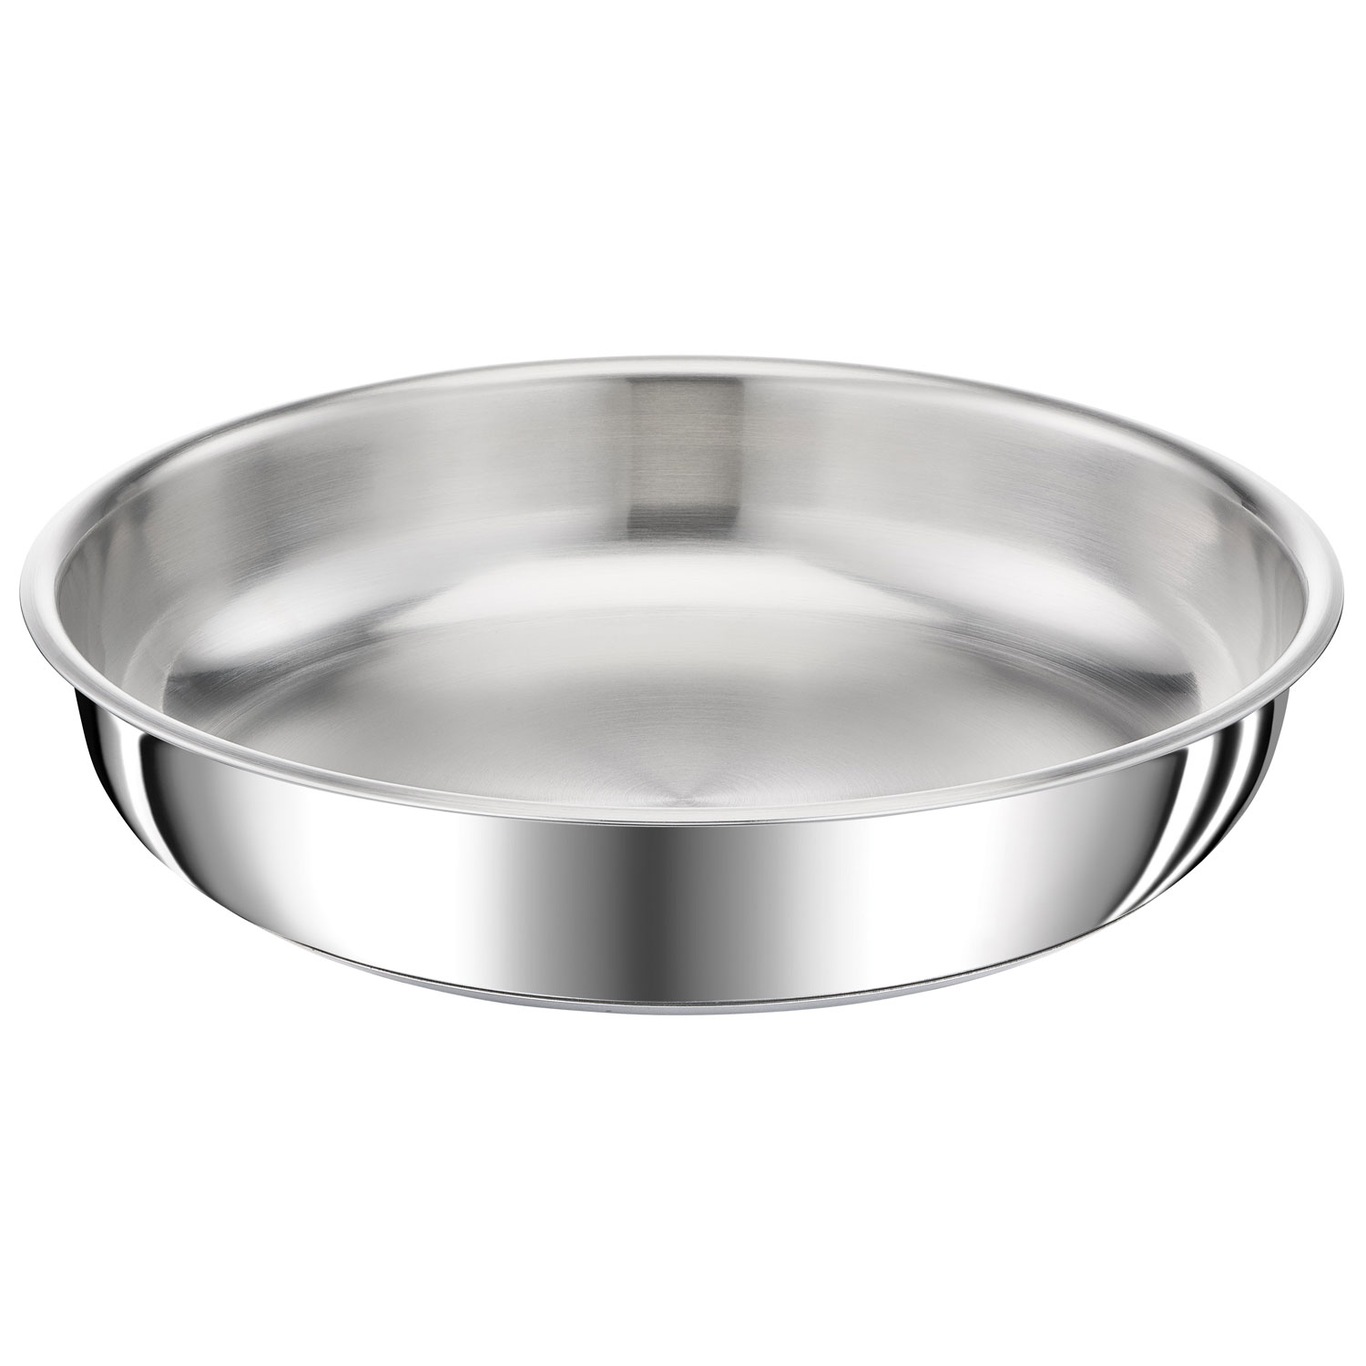 Ingenio Preference Frying Pan, 28 cm